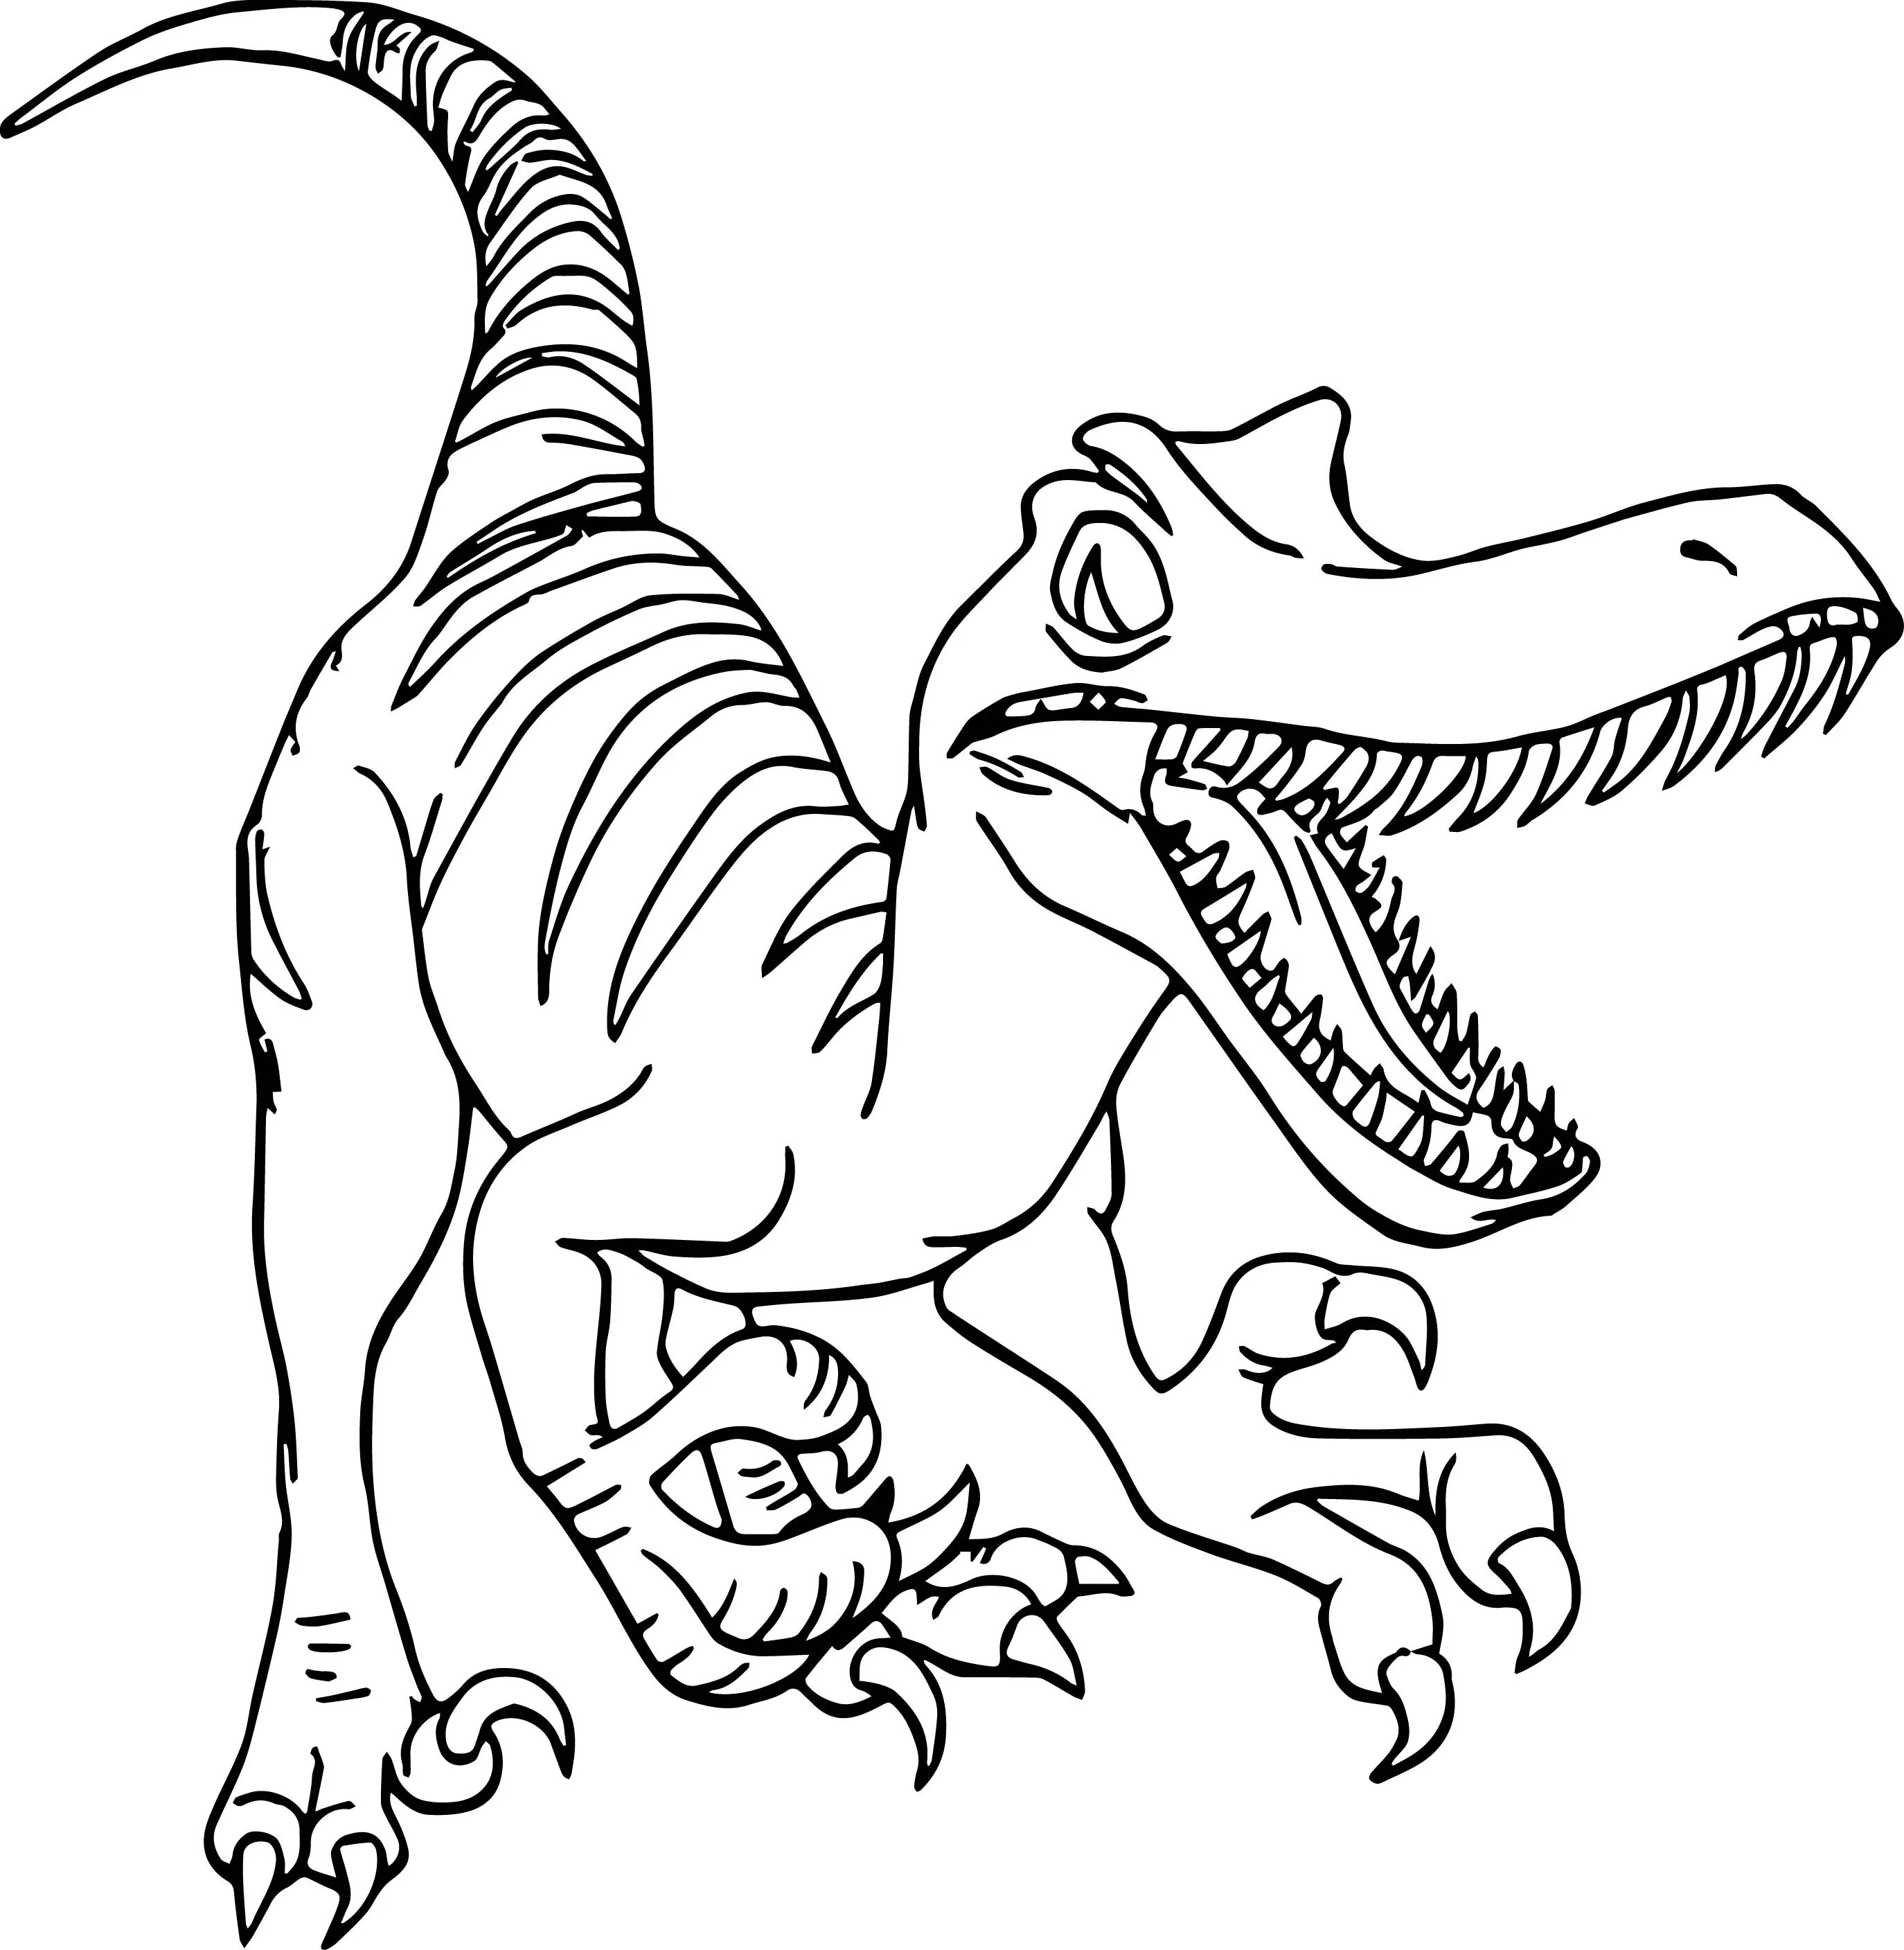 Динозавры раскраска а4. Раскраска Велоцираптор Блю. Раскраски динозавры Велоцираптор. Раскраска динозавр Раптор. Динозавры раскраски для детей для печати.